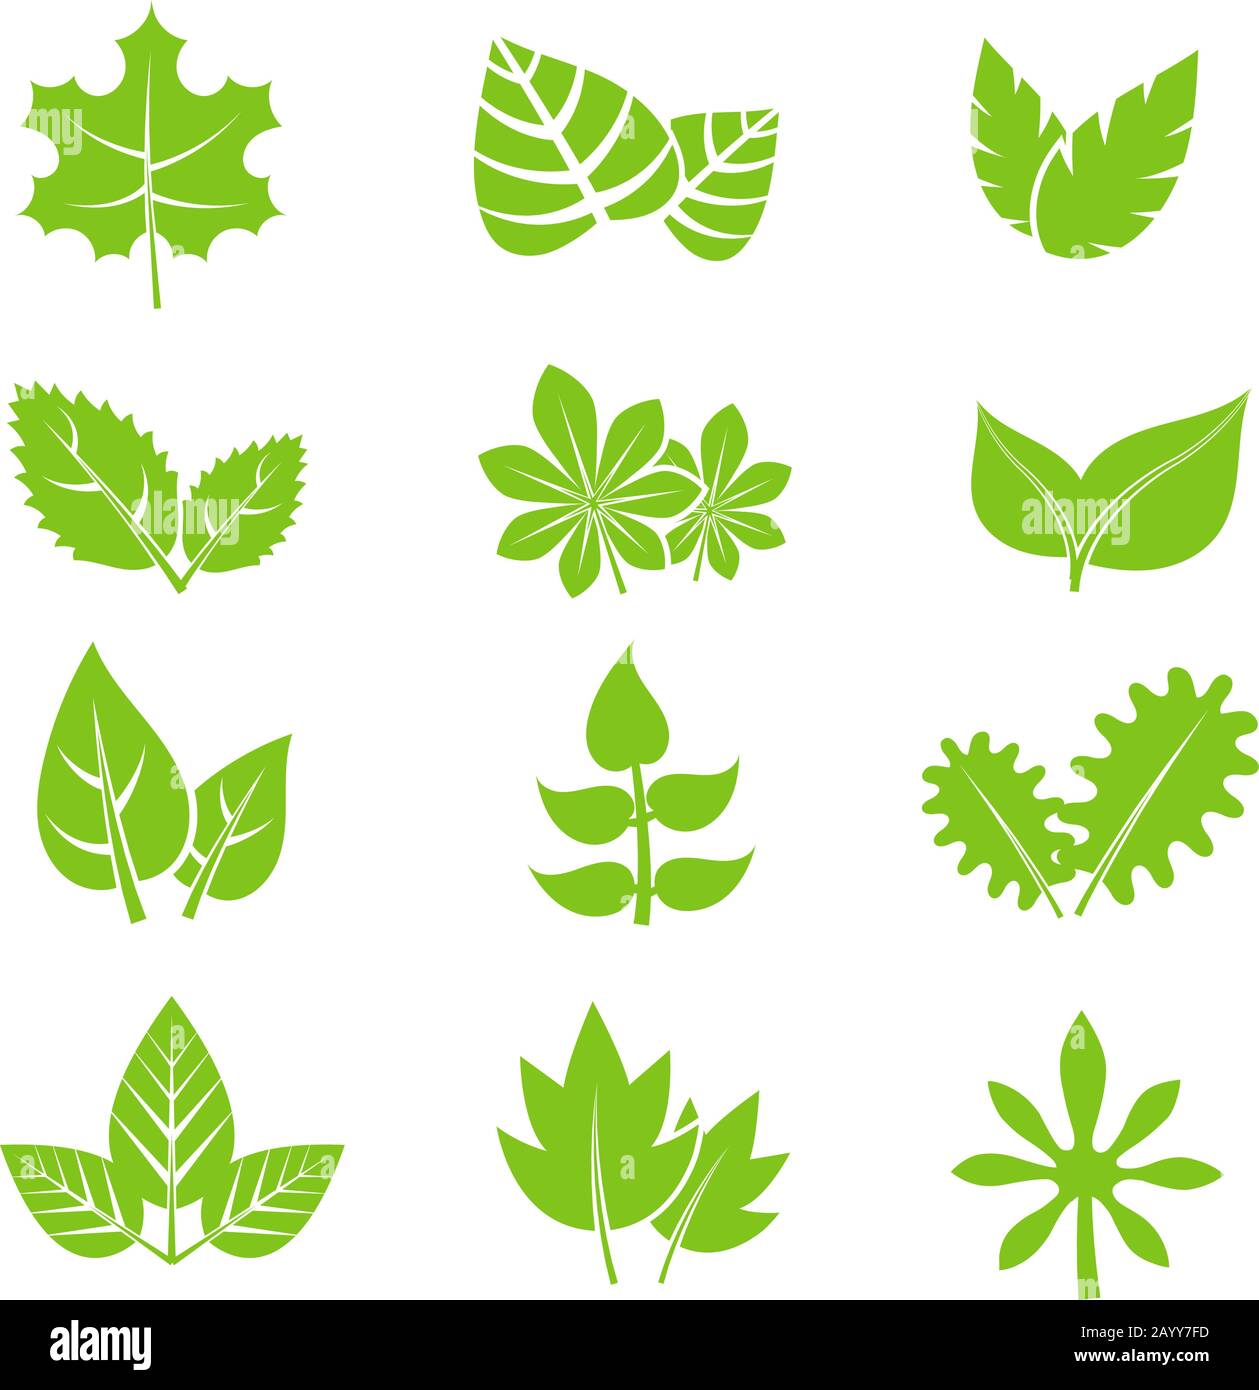 Vektorsymbole für grüne Lamellen festgelegt. Abbildung der natürlichen ökologischen Elemente Stock Vektor